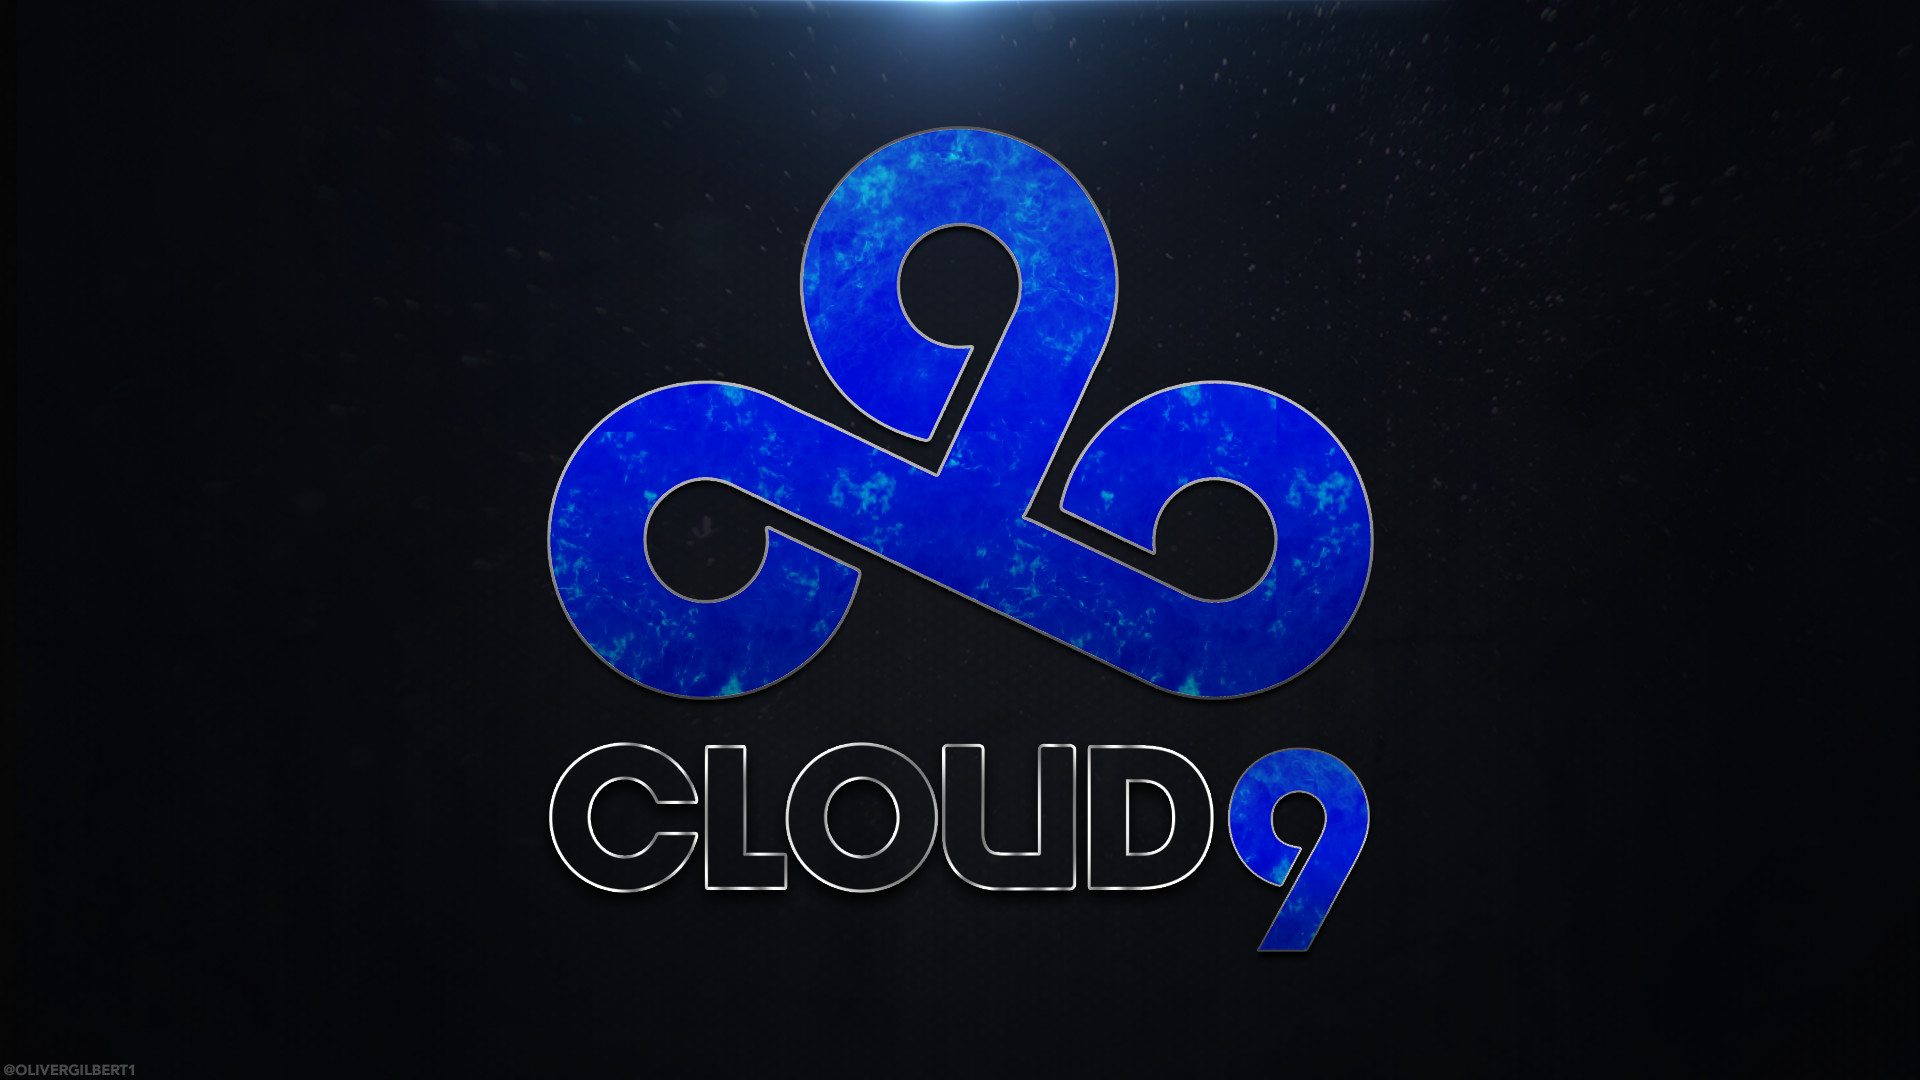 Интах 9. Клауд 9. Клауд 9 КС го. Cloud9 наклейки. Cloud9 киберспорт.